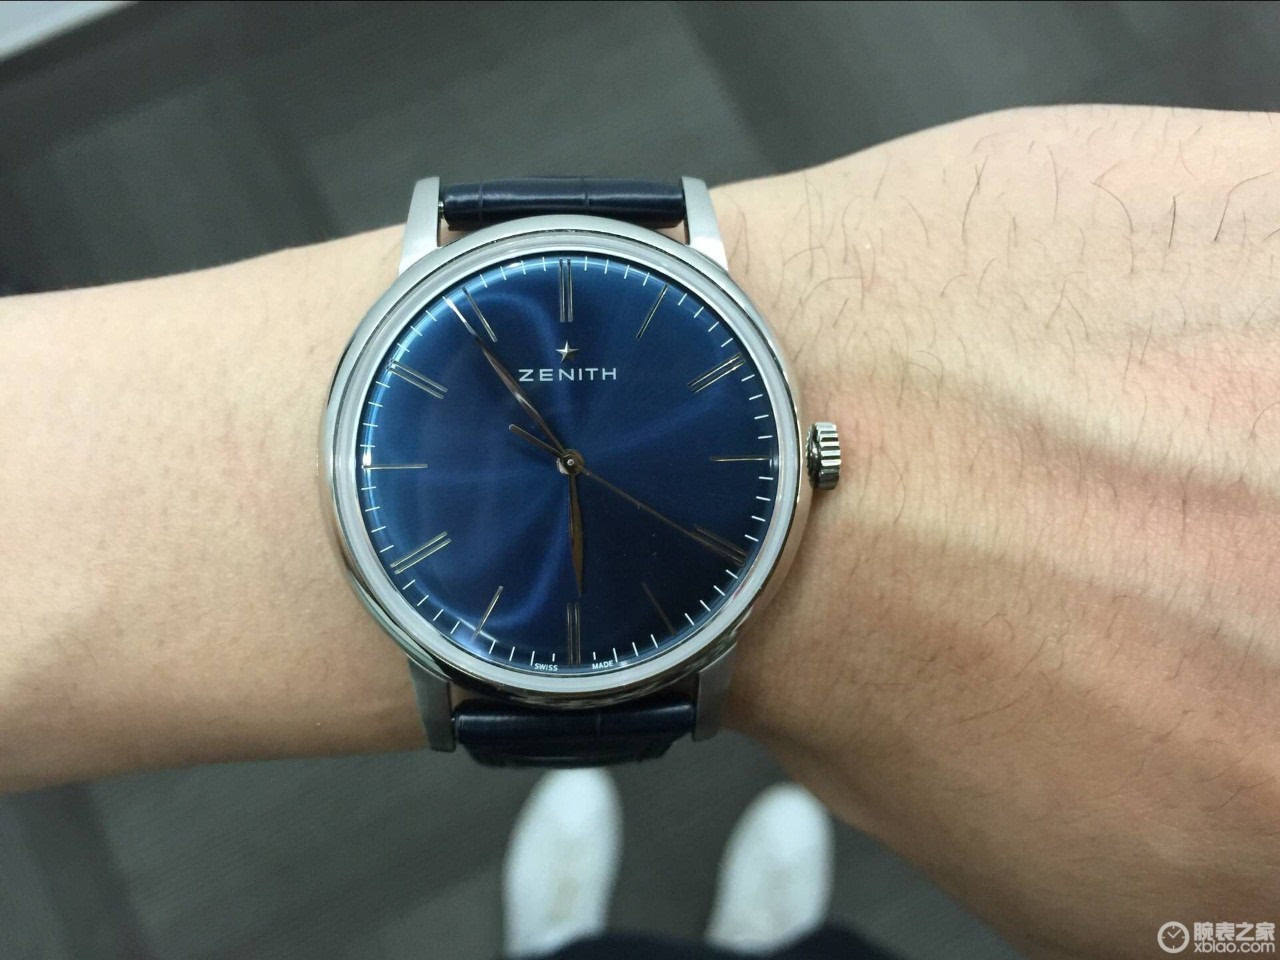 4、我在瑞士买的真力时手表不到2年。今天想换表带，来大连麦凯勒店